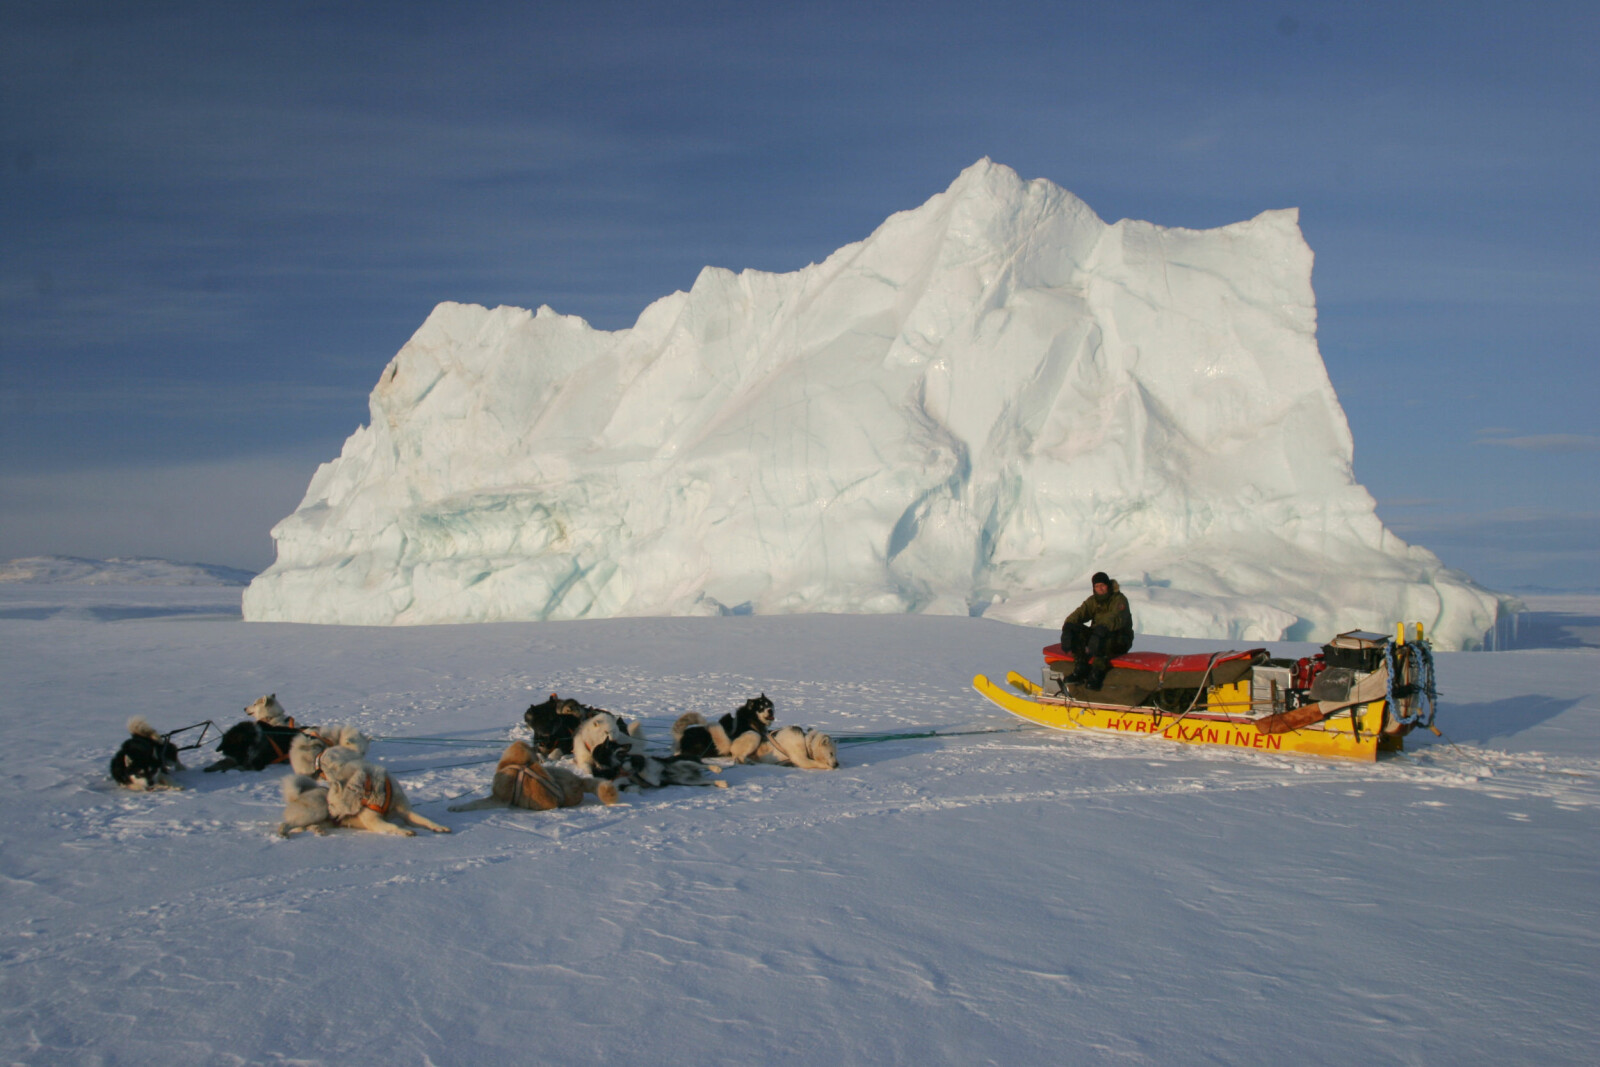 <b>ISPATRULJE:</b> Bjarki Friis tar seg en rast ute på havisen under vårpatruljeringen. Ettersom mannskapene bygger sledene selv, er det tradisjon å gi dem kreative navn som f.eks. Hybelkaninen.